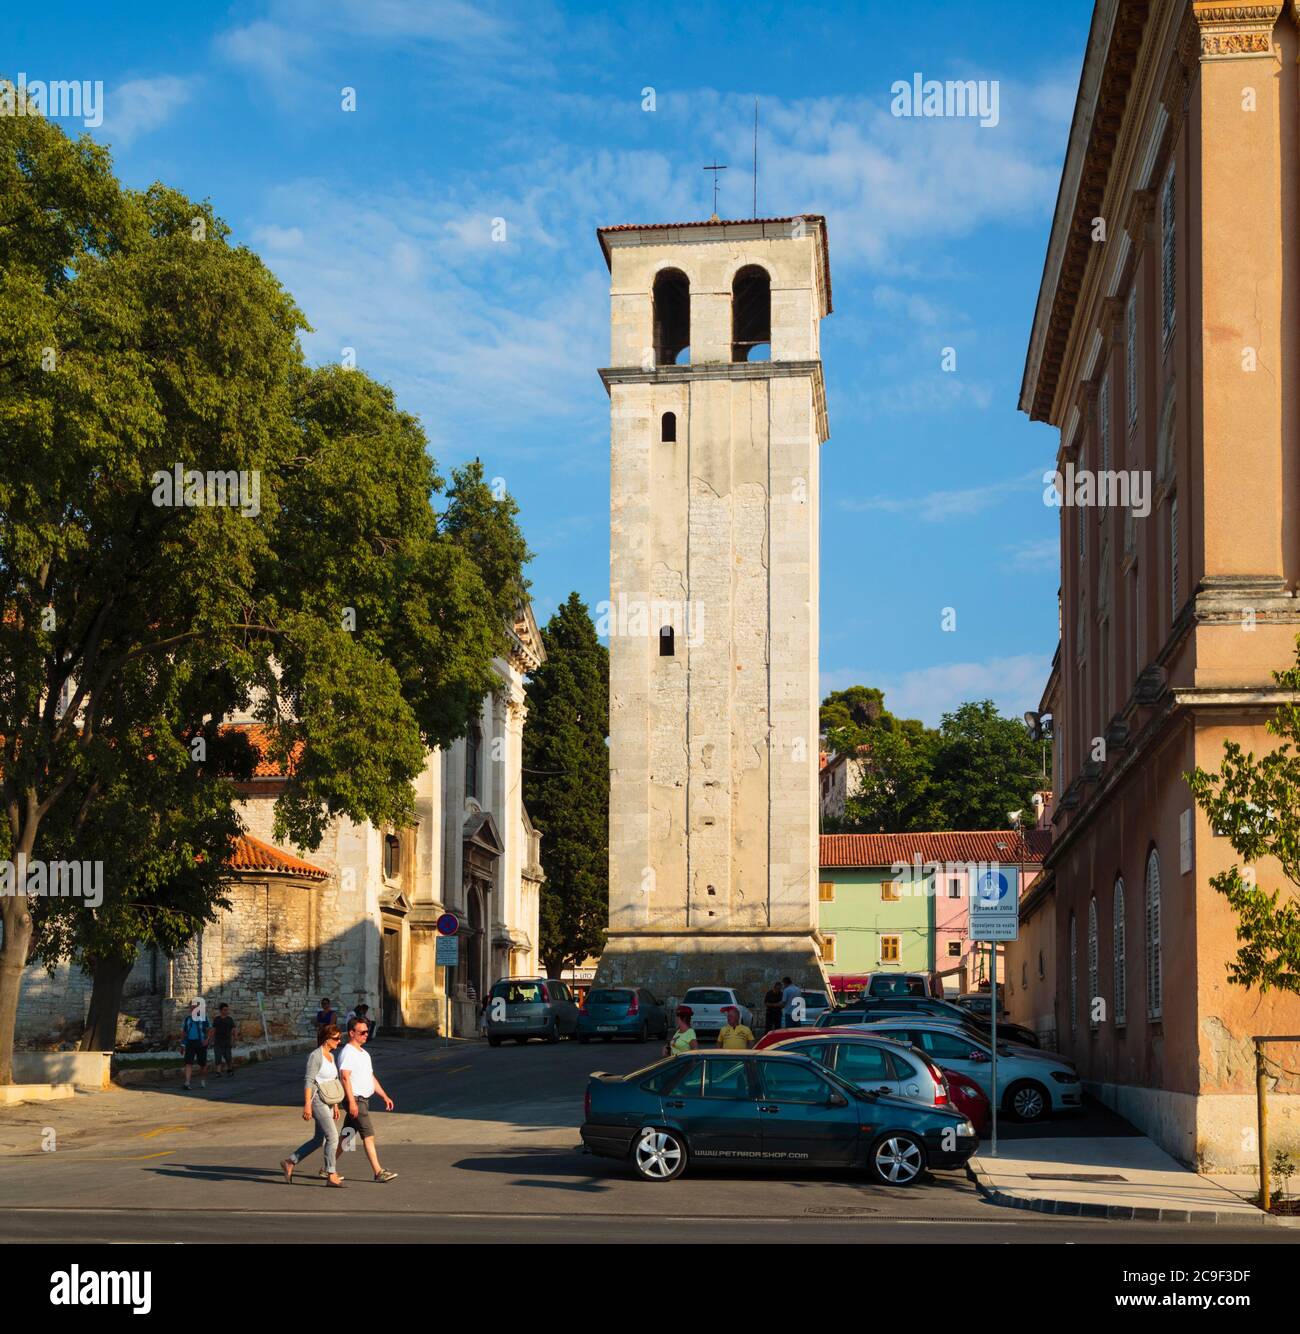 Pula, Comté d'Istrie, Croatie. Le clocher autonome de la cathédrale de Pula, cathédrale de l'Assomption de la Sainte Vierge Marie. Banque D'Images